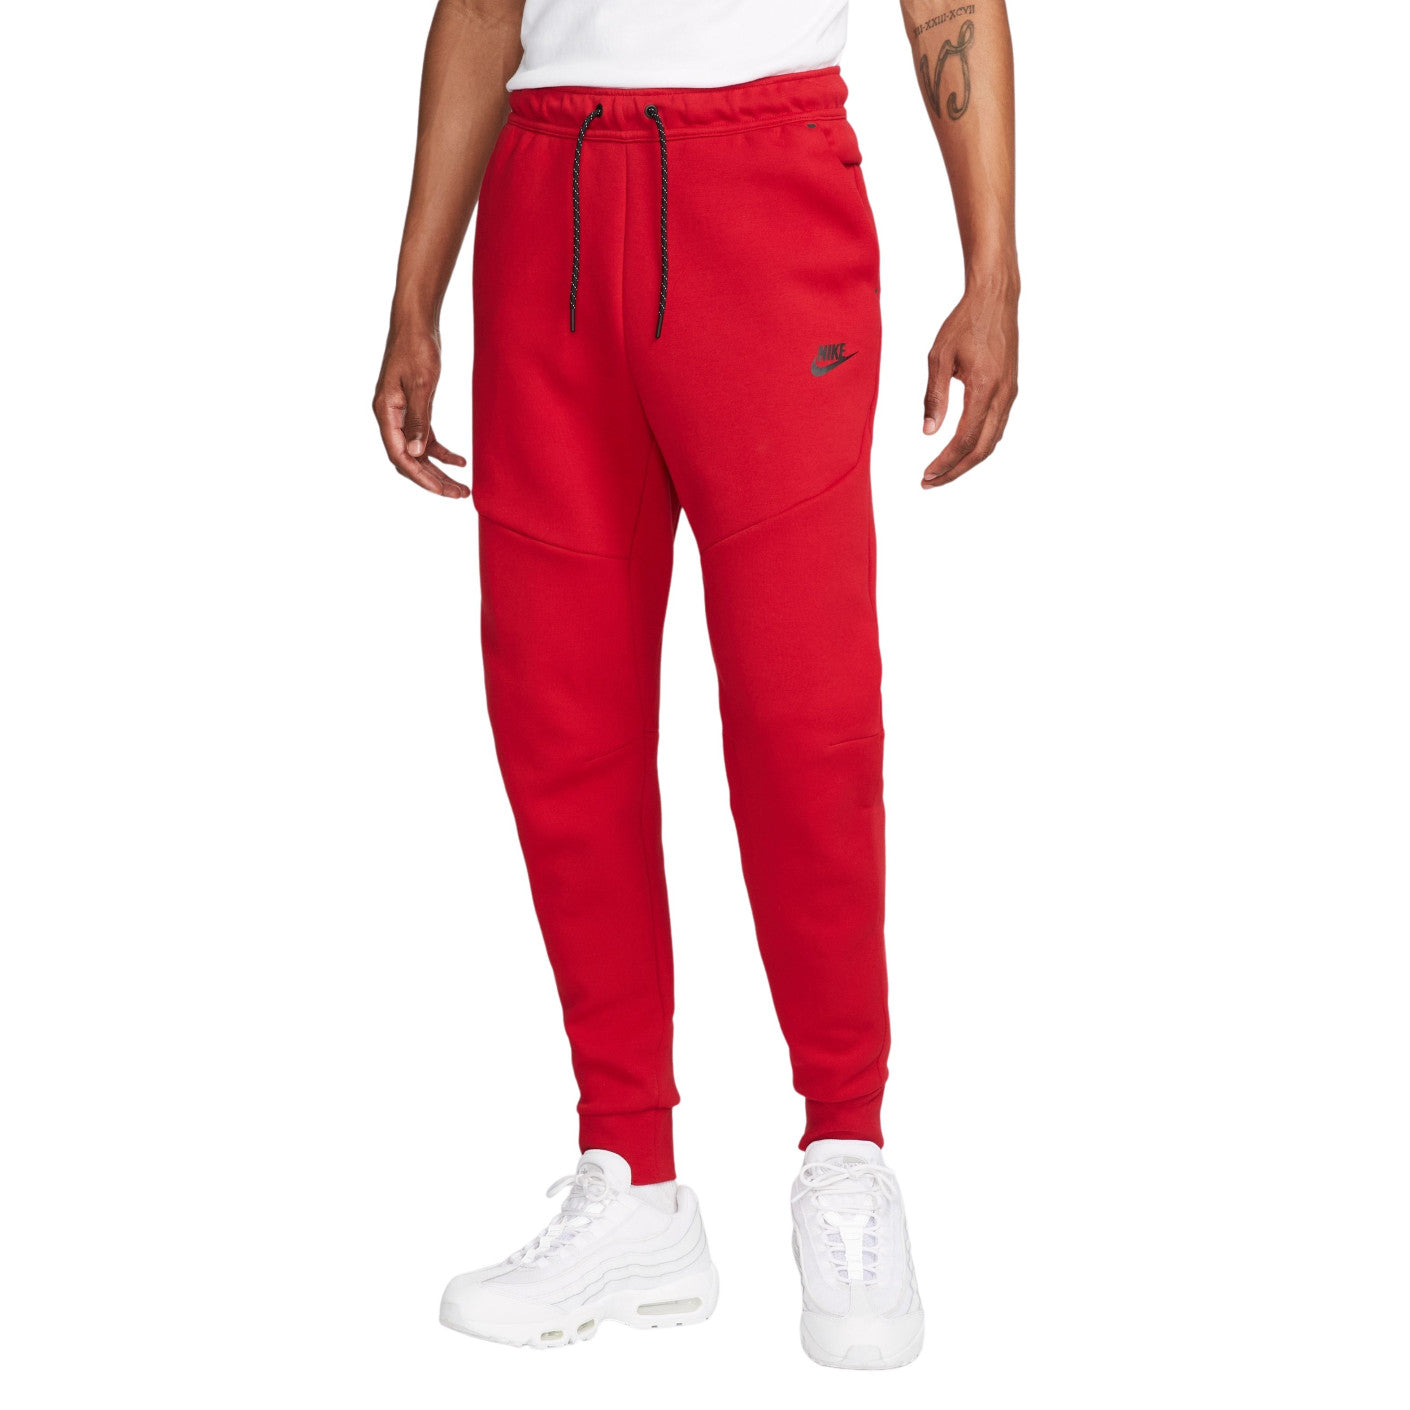 Conjunto Nike Sportswear Tech Fleece Vermelho